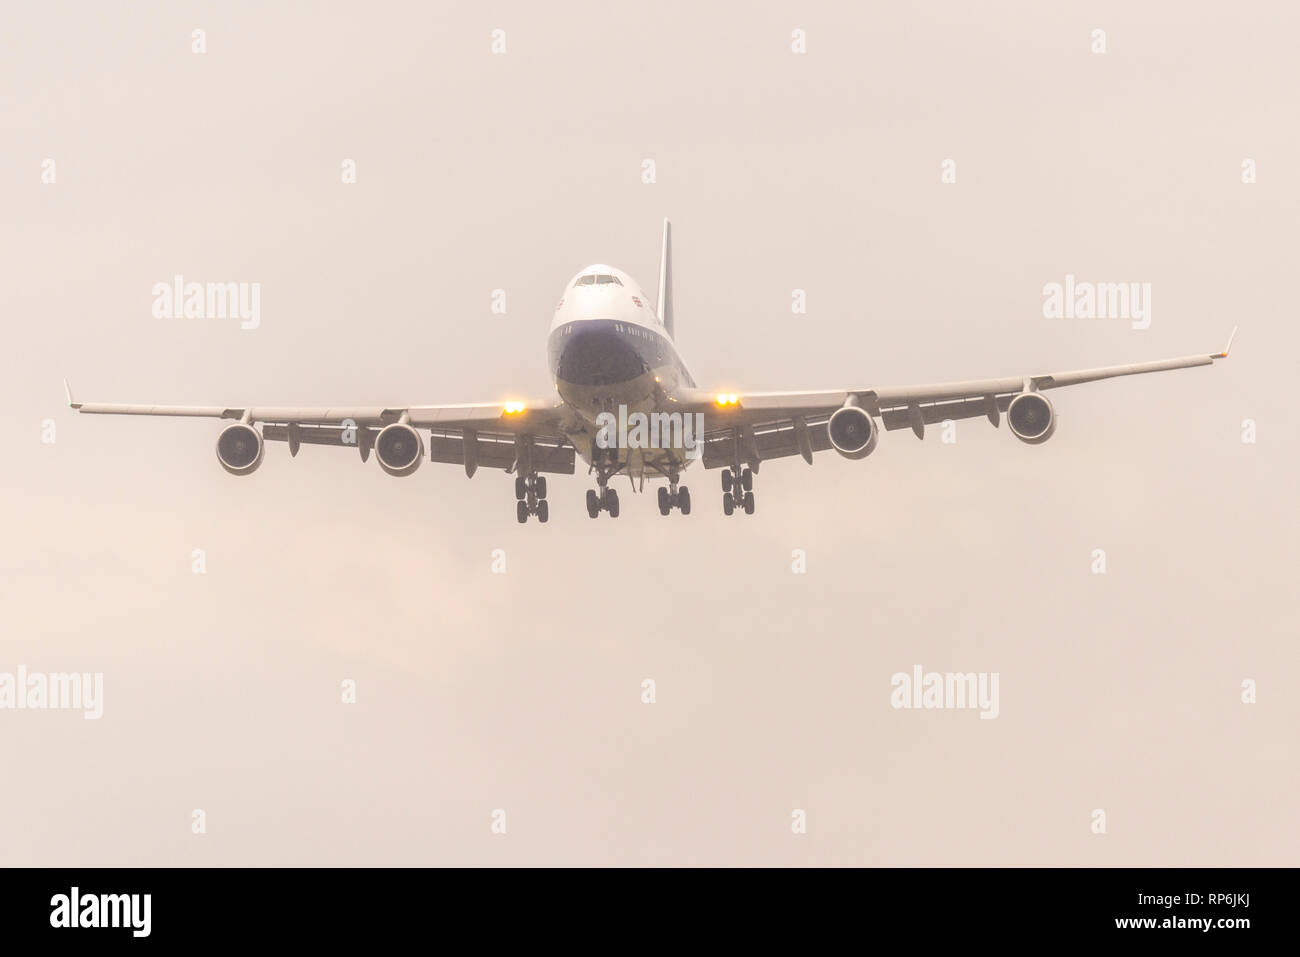 British Airways Boeing 747 jumbo getto G-BYGC in atterraggio a Heathrow in heavy rain aver volato da Dublino dove era stata dipinta in retrò colori BOAC Foto Stock